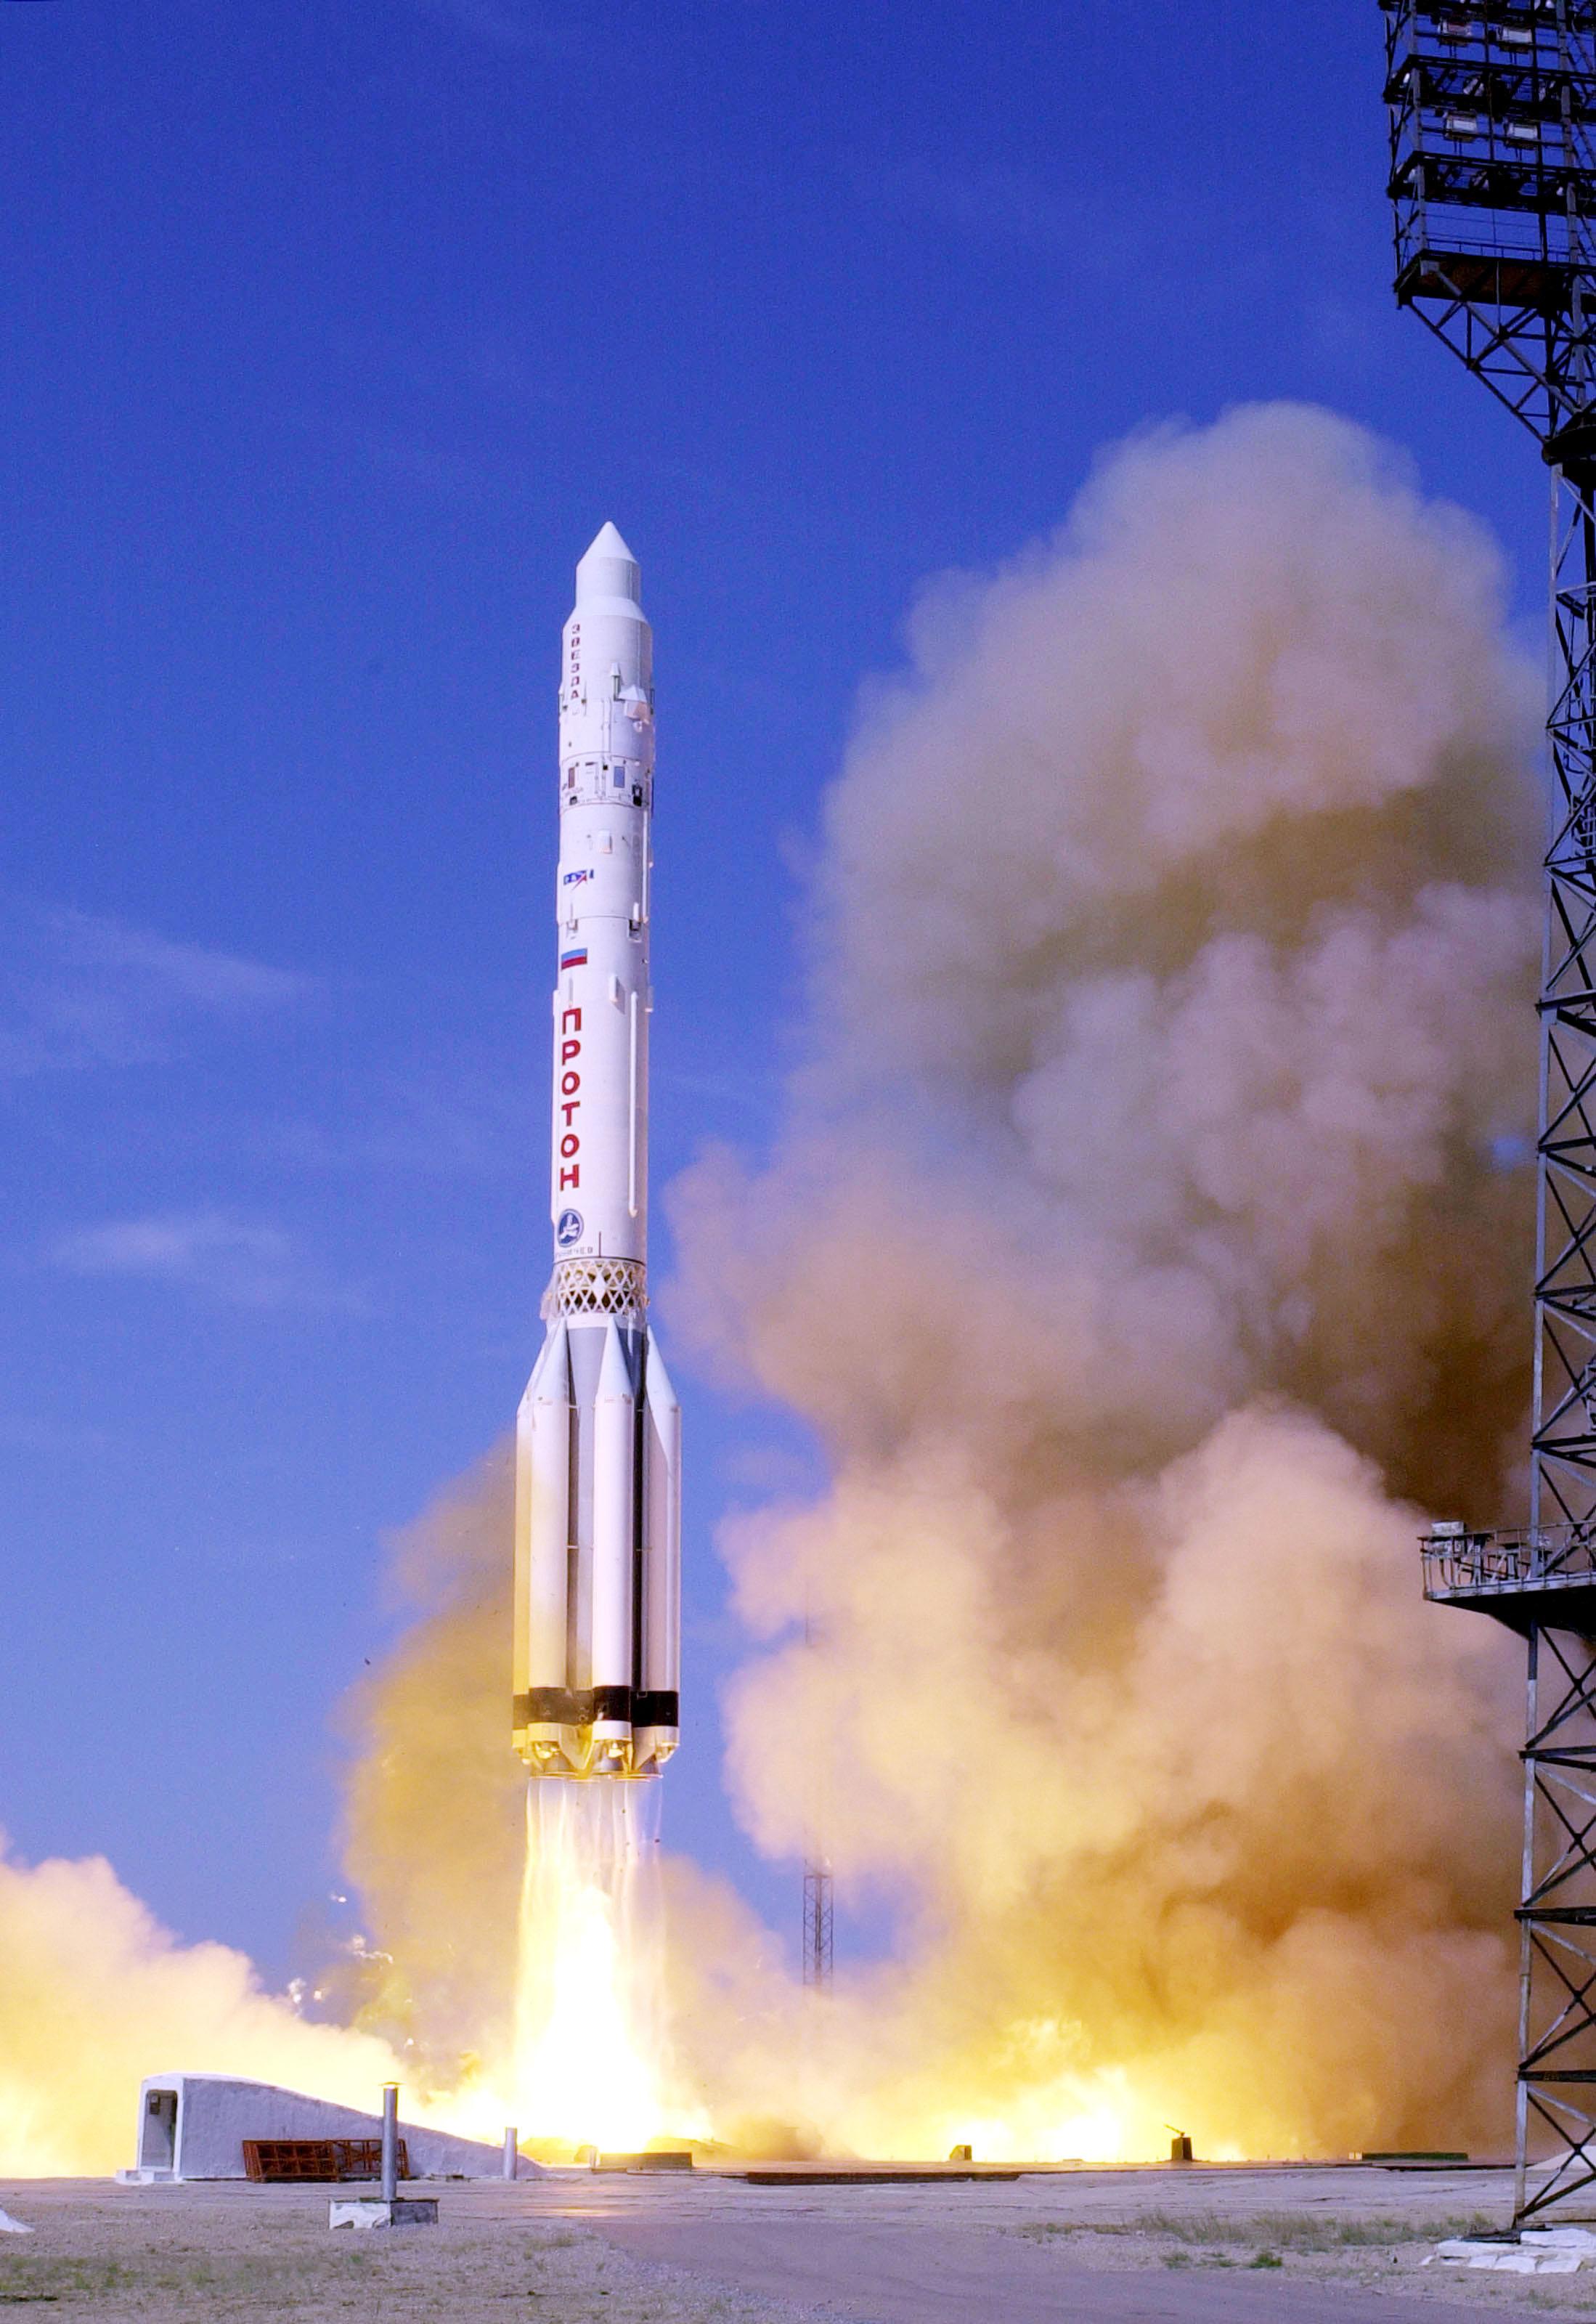 1号机在鹿儿岛县种子岛宇宙中心发射升空,火箭上搭载了光学卫星大地3